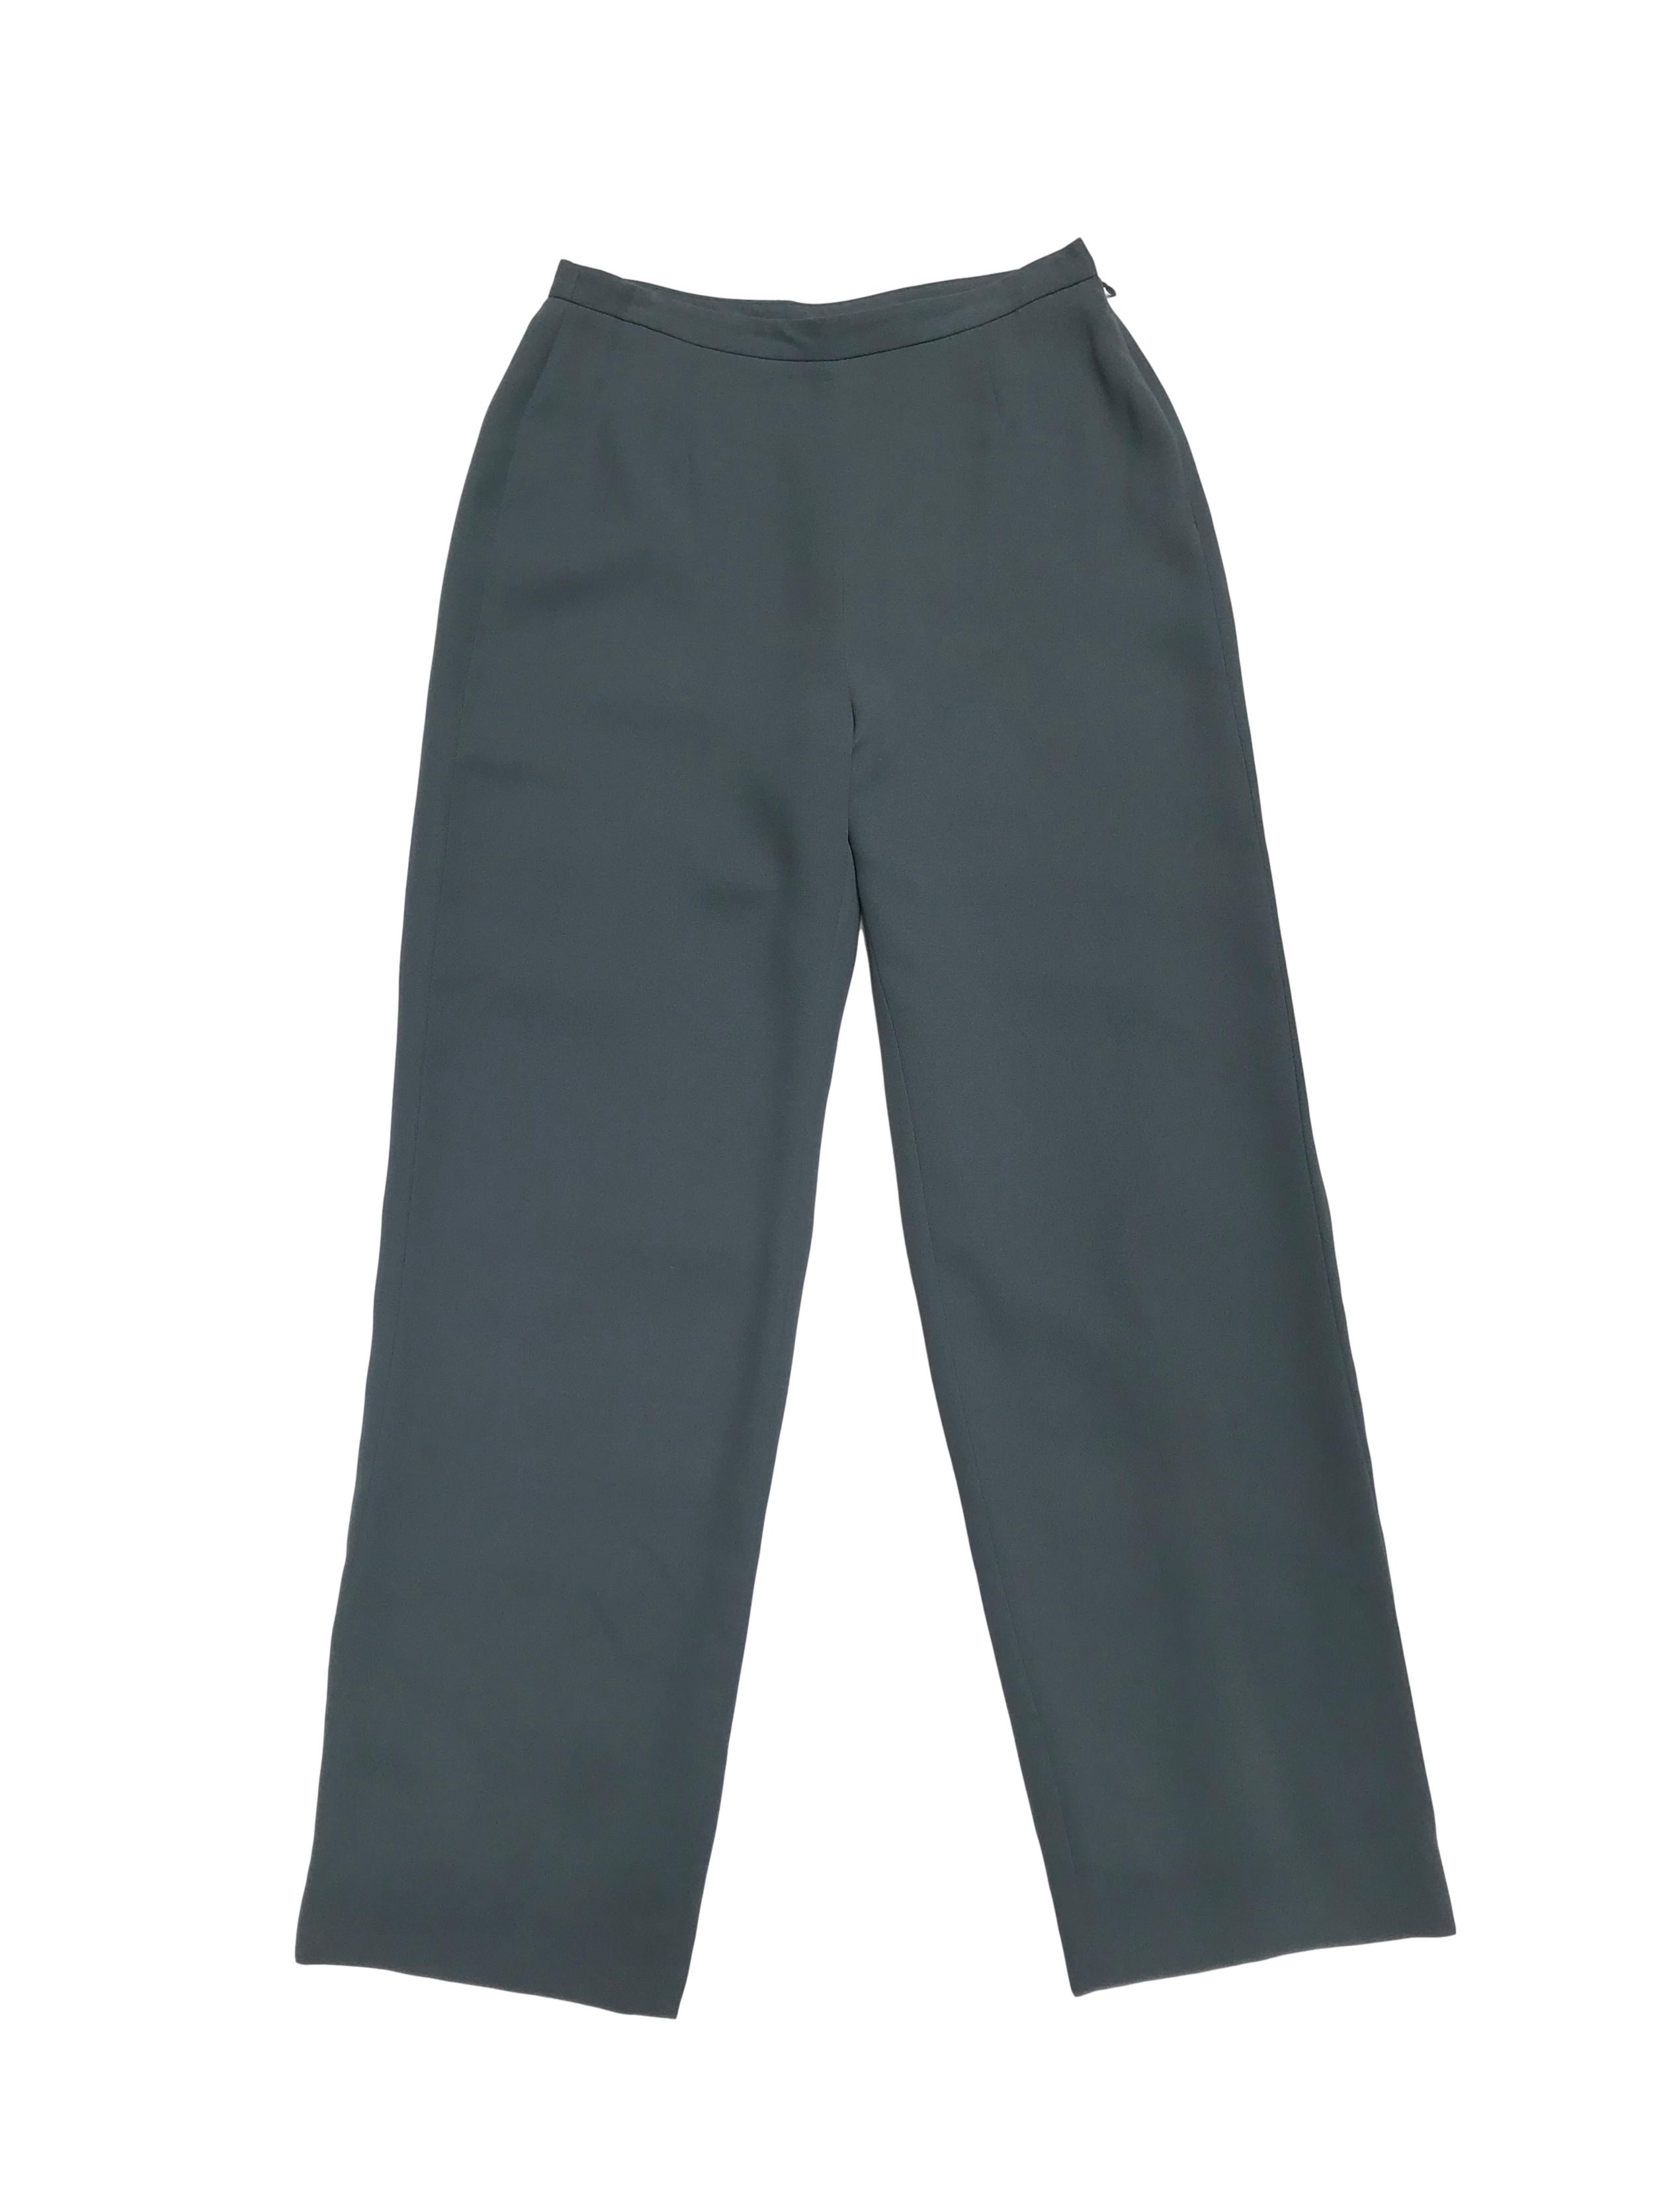 Pantalón vintage verde a la cintura, forrado, corte recto con cierre lateral. Cintura 72cm Cadera 100cm. Tiene Blazer conjunto